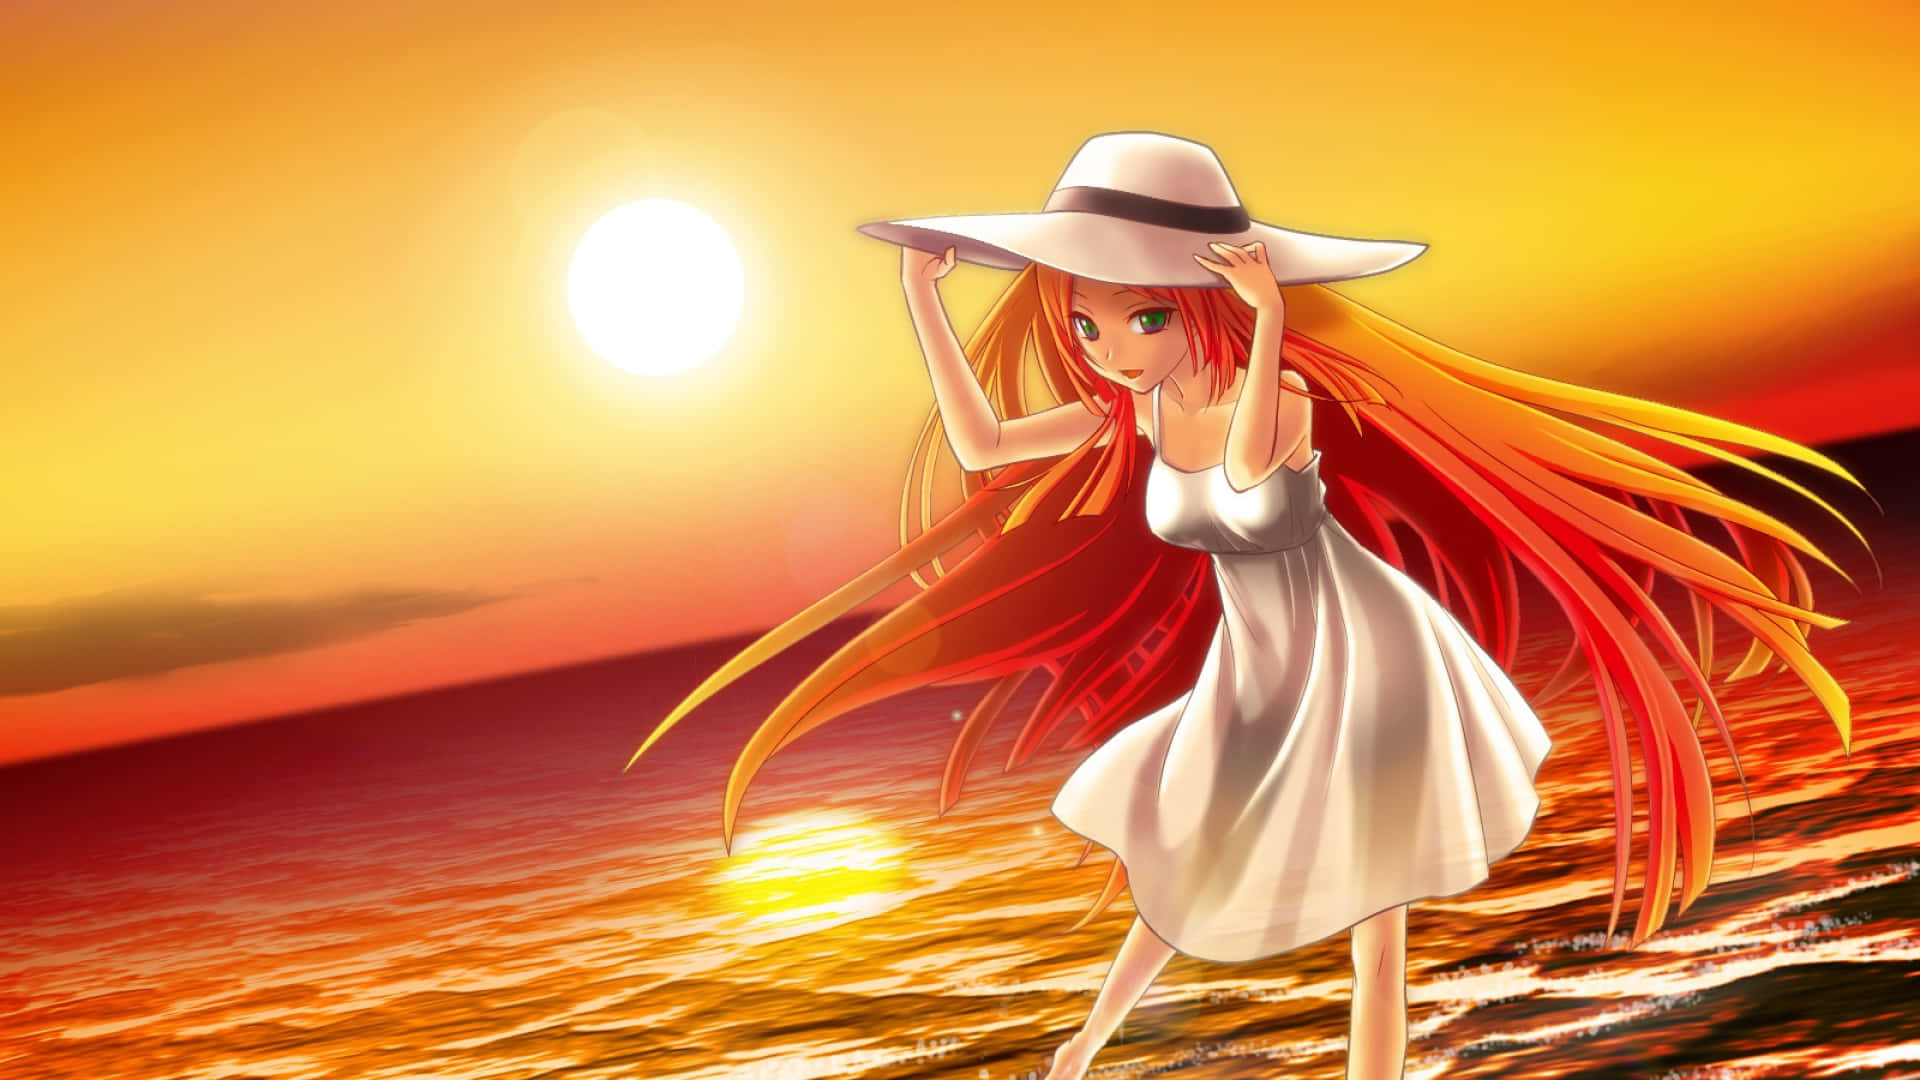 Orange Hair Anime Girl On Beach Wallpaper